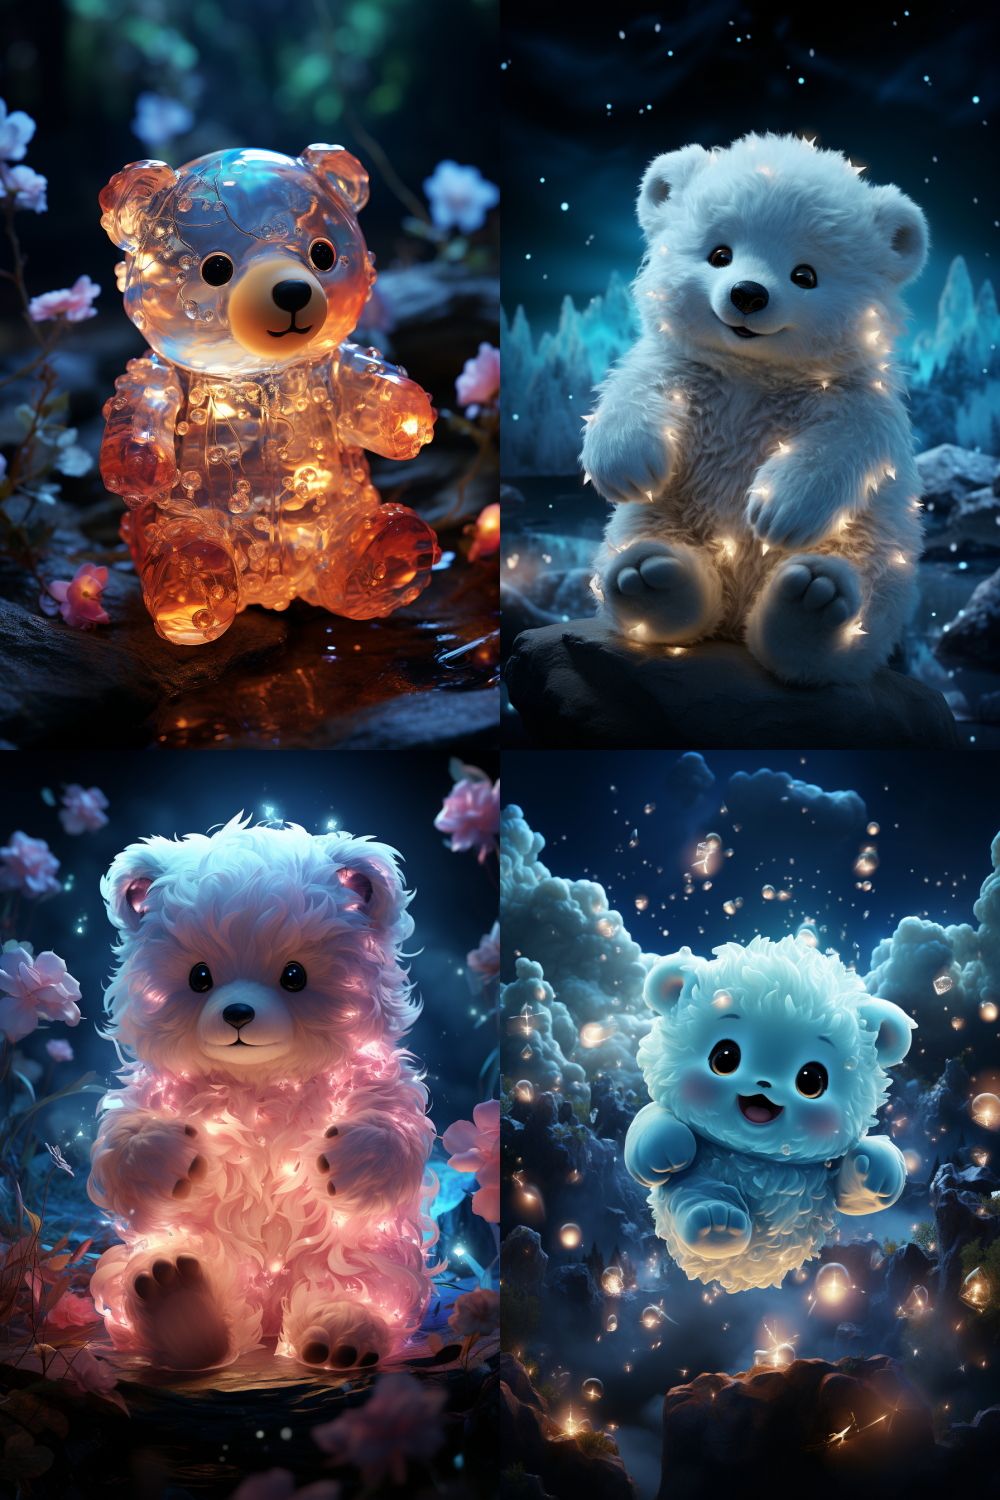 Un ursuleț magic și drăguț cu un corp strălucitor transparent plutește într-un peisaj magic de noapte